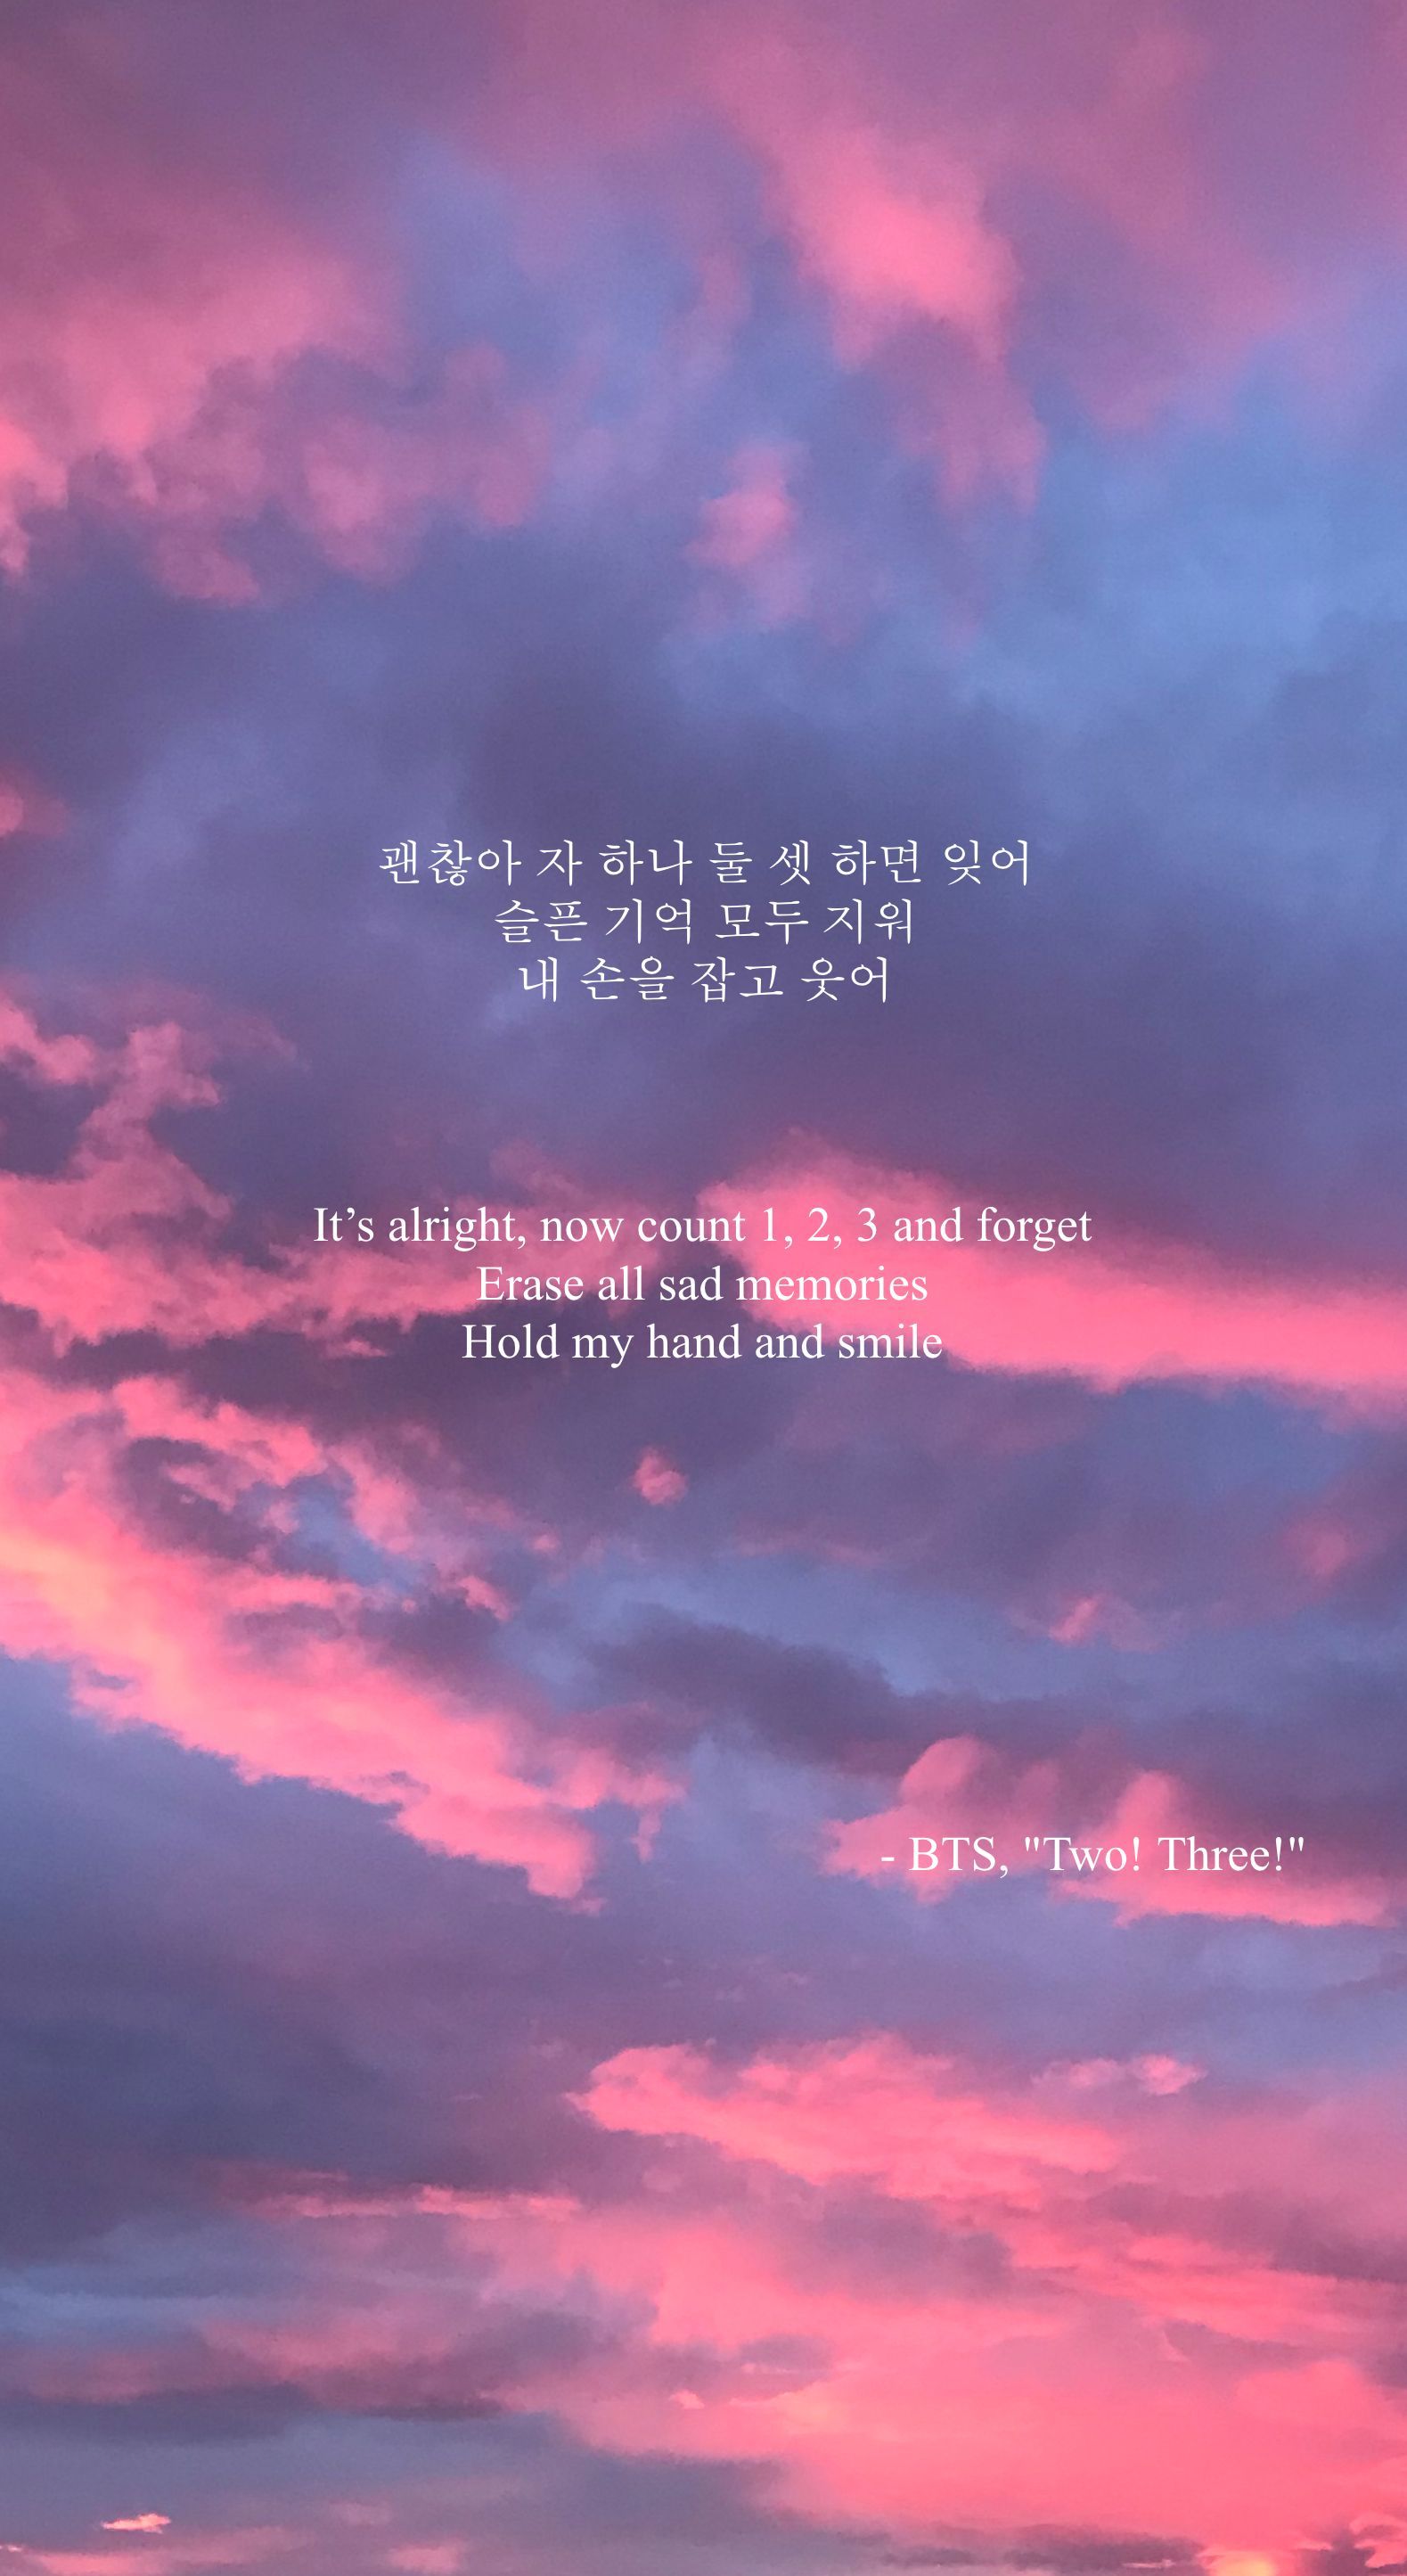 BTS Lyrics Wallpapers on WallpaperDog